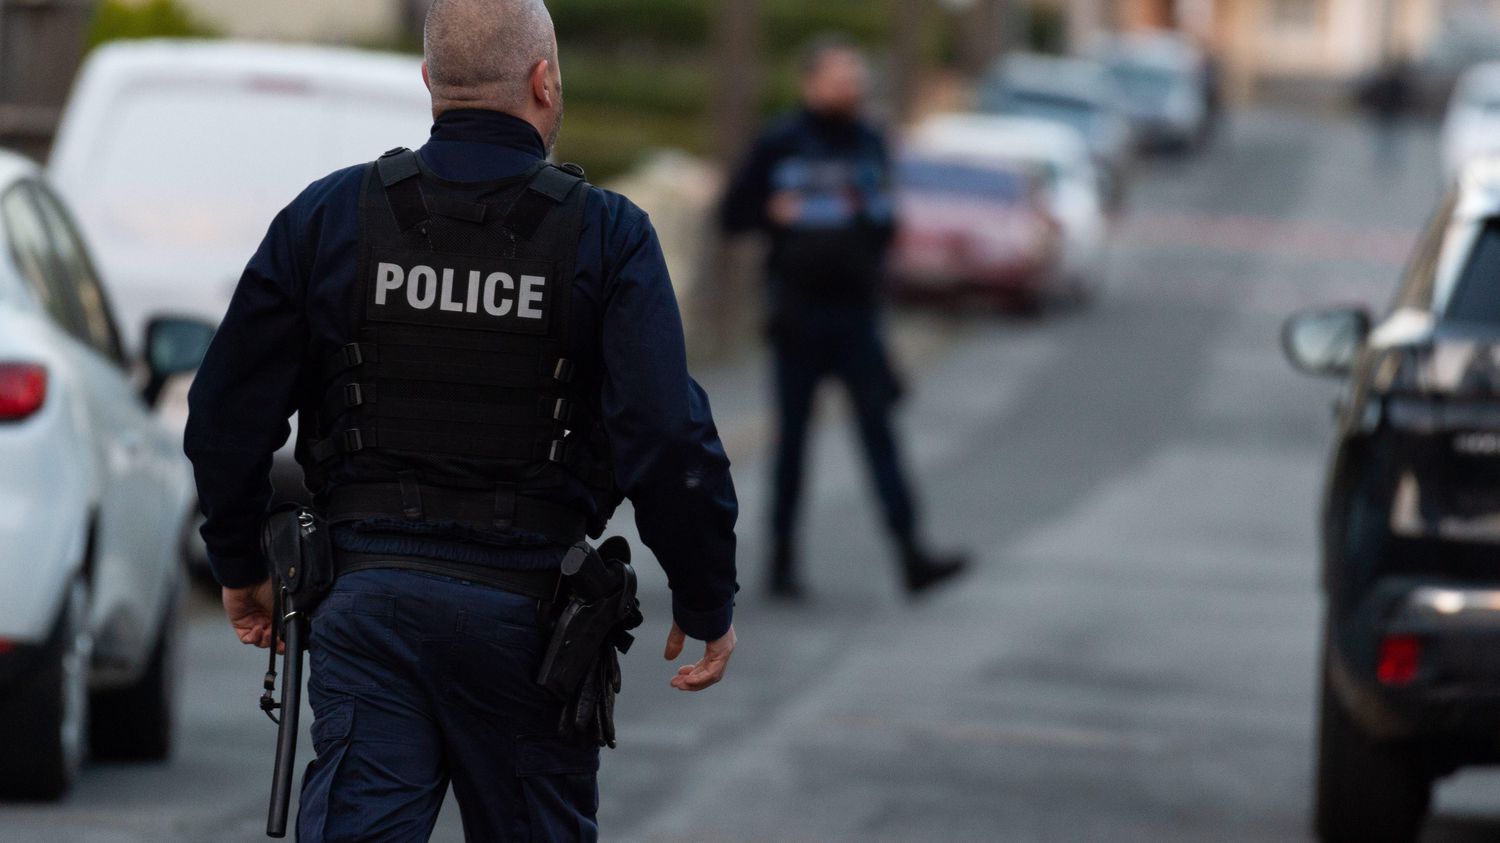 Rennes: Trois corps, dont deux femmes, découverts dans une maison à Saint-Jacques-de-La-Lande